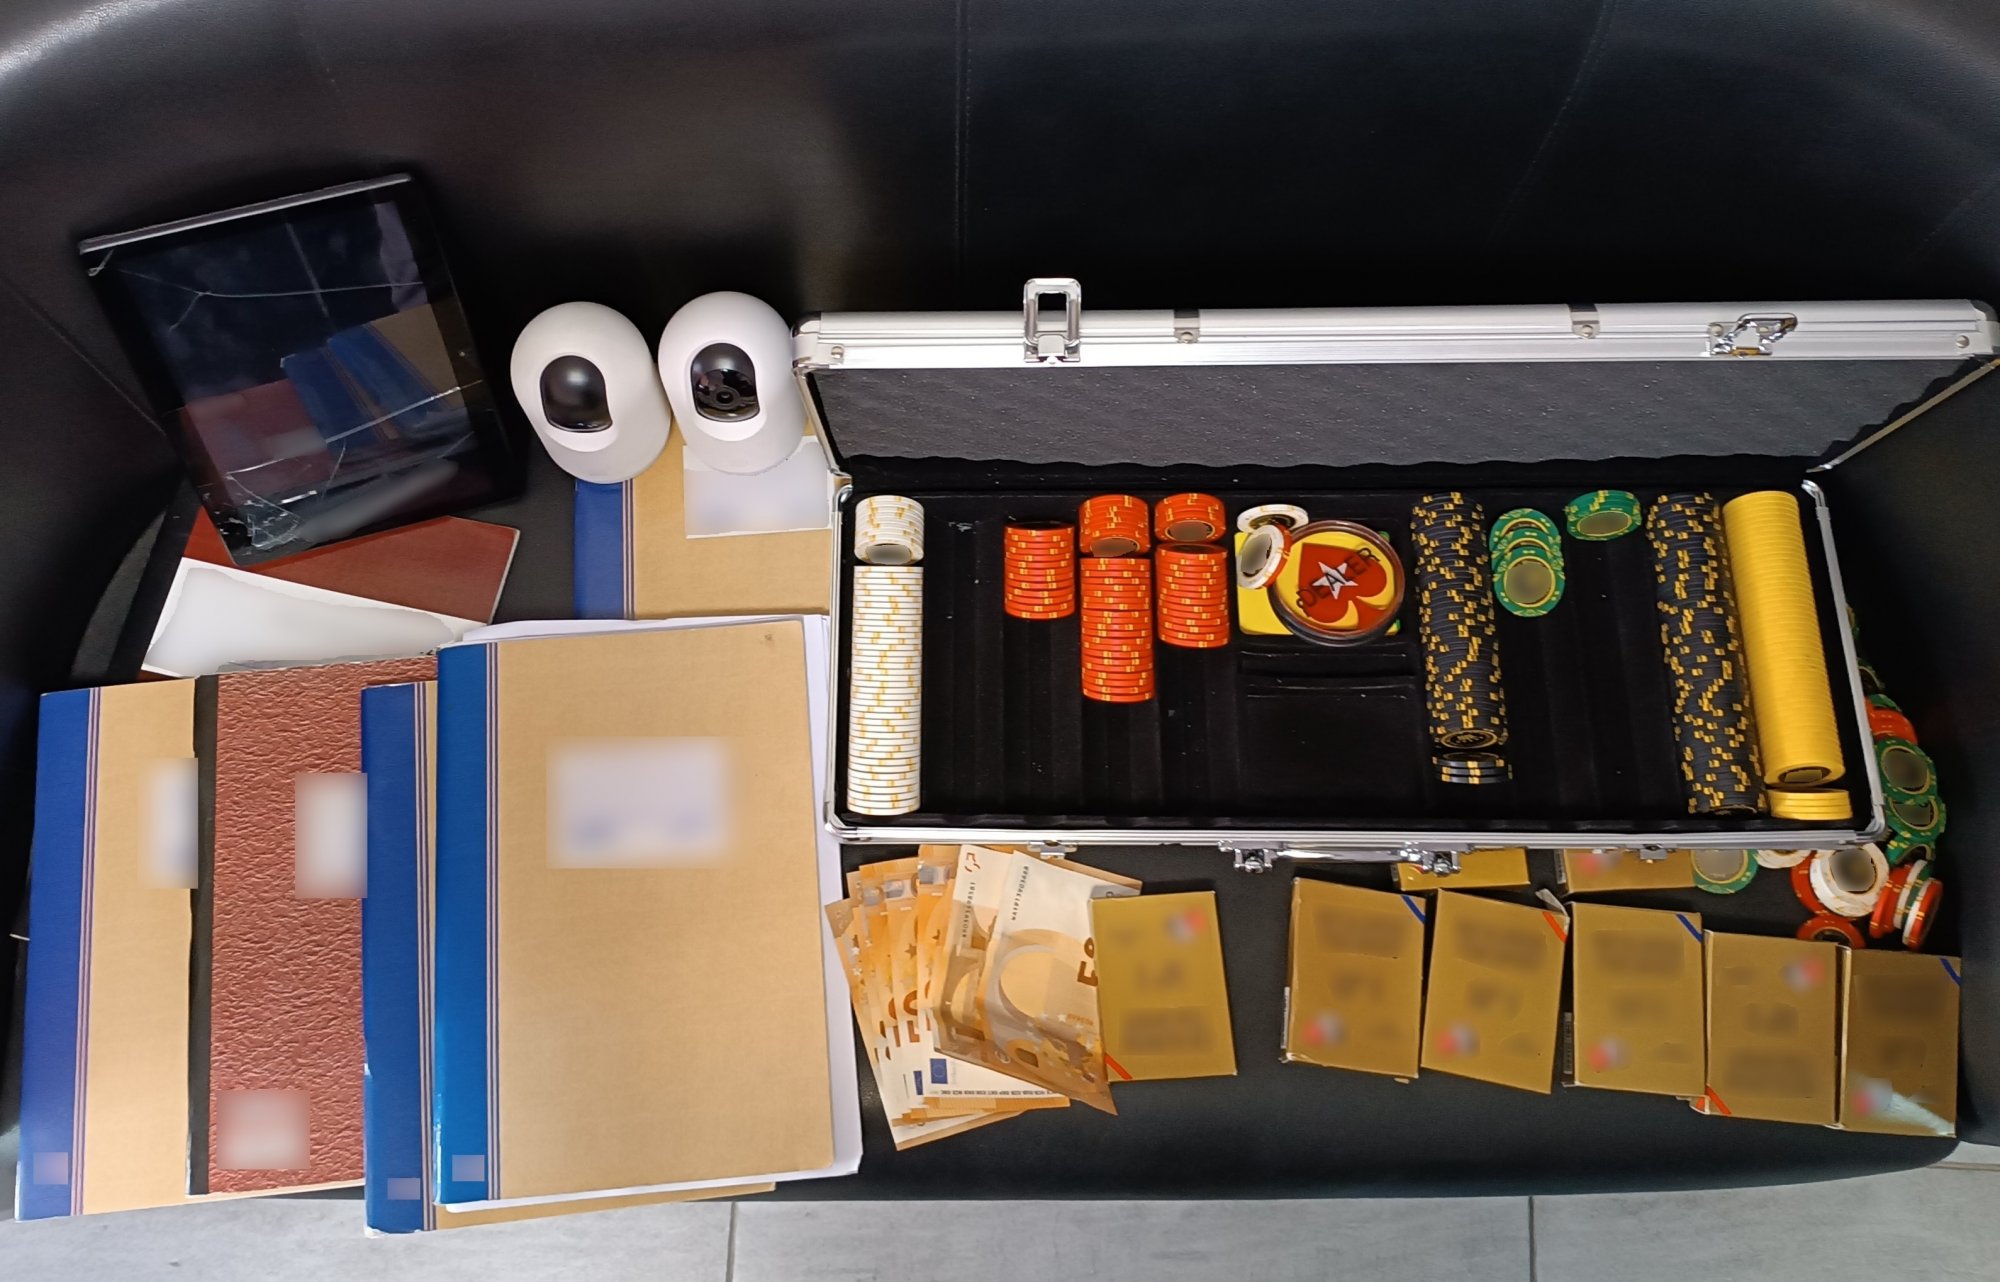 Πέλλα: Τζογαδόροι έπαιζαν παράνομα πόκερ σε αποθήκη – 10 συλλήψεις, είχαν κάμερες στην είσοδο